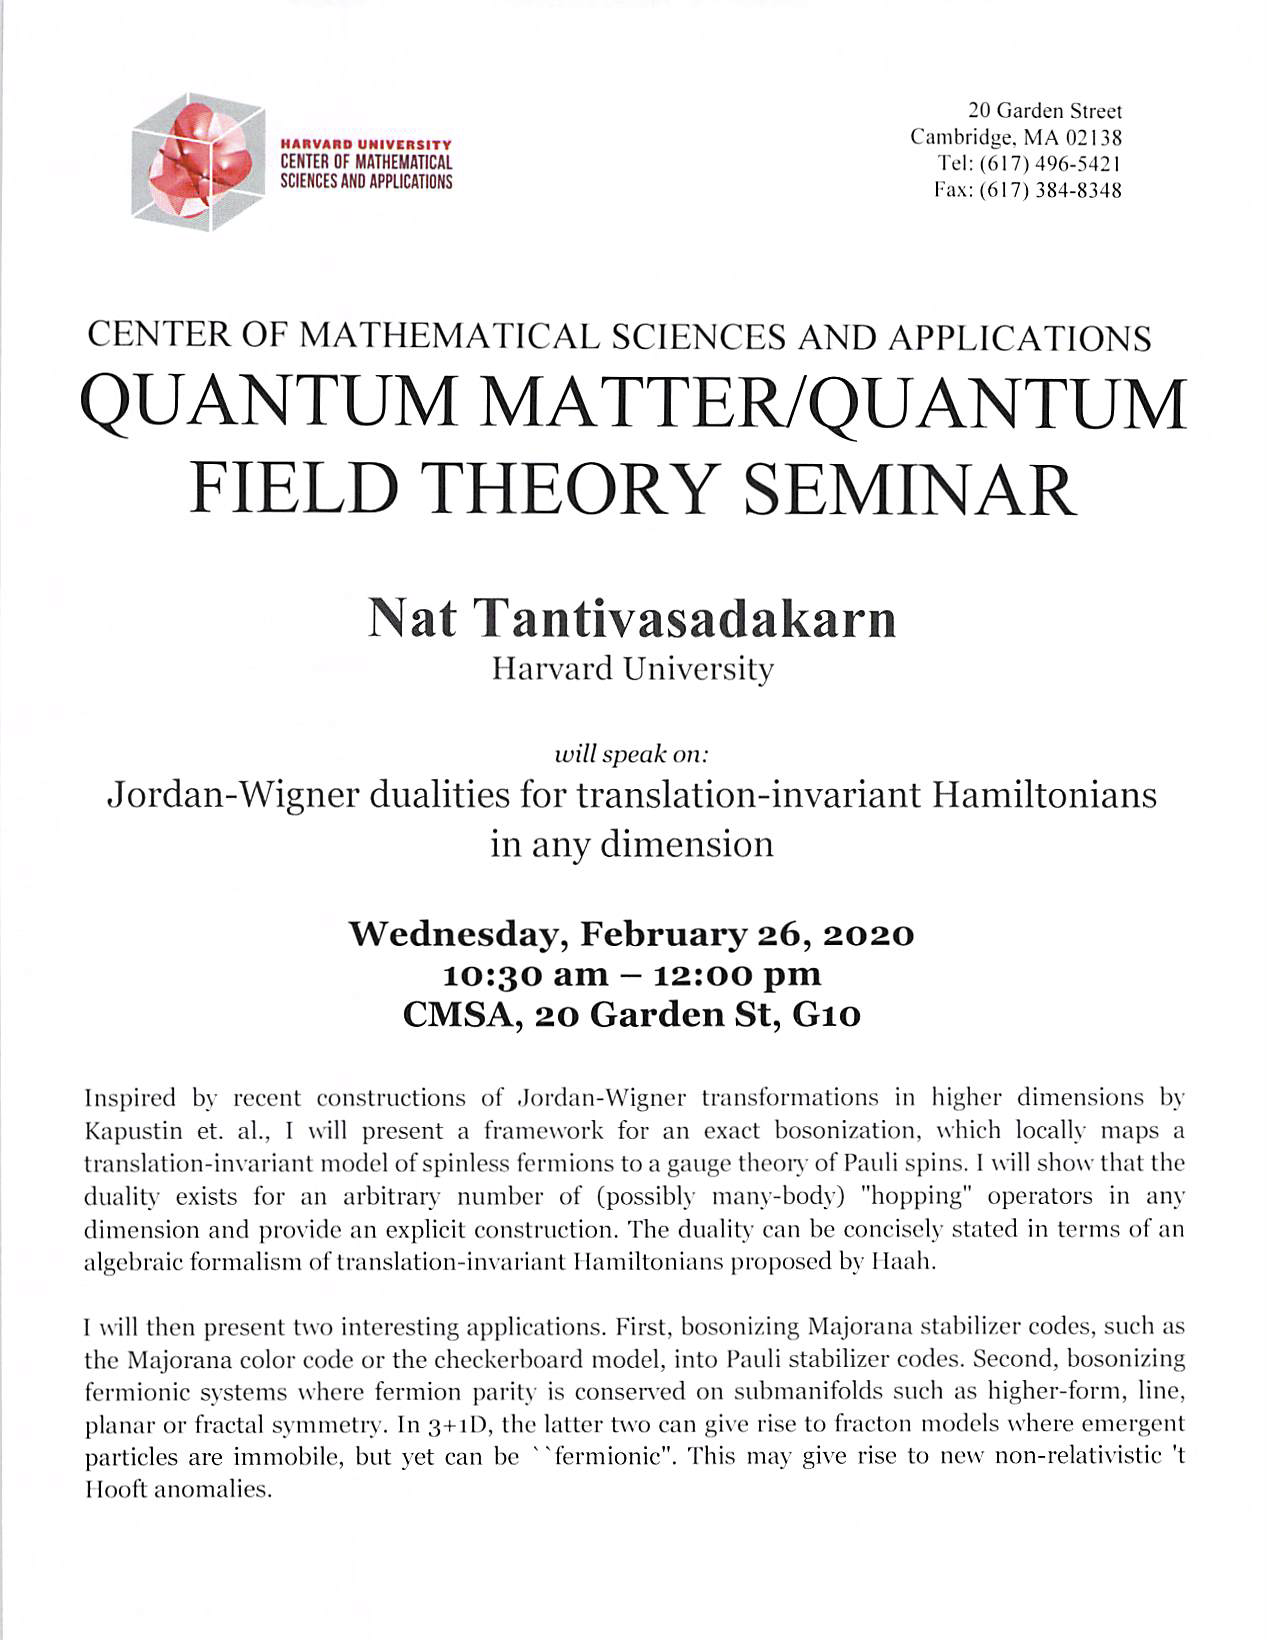 02/26/2020 Quantum Matter/Quantum Field Theory Seminar